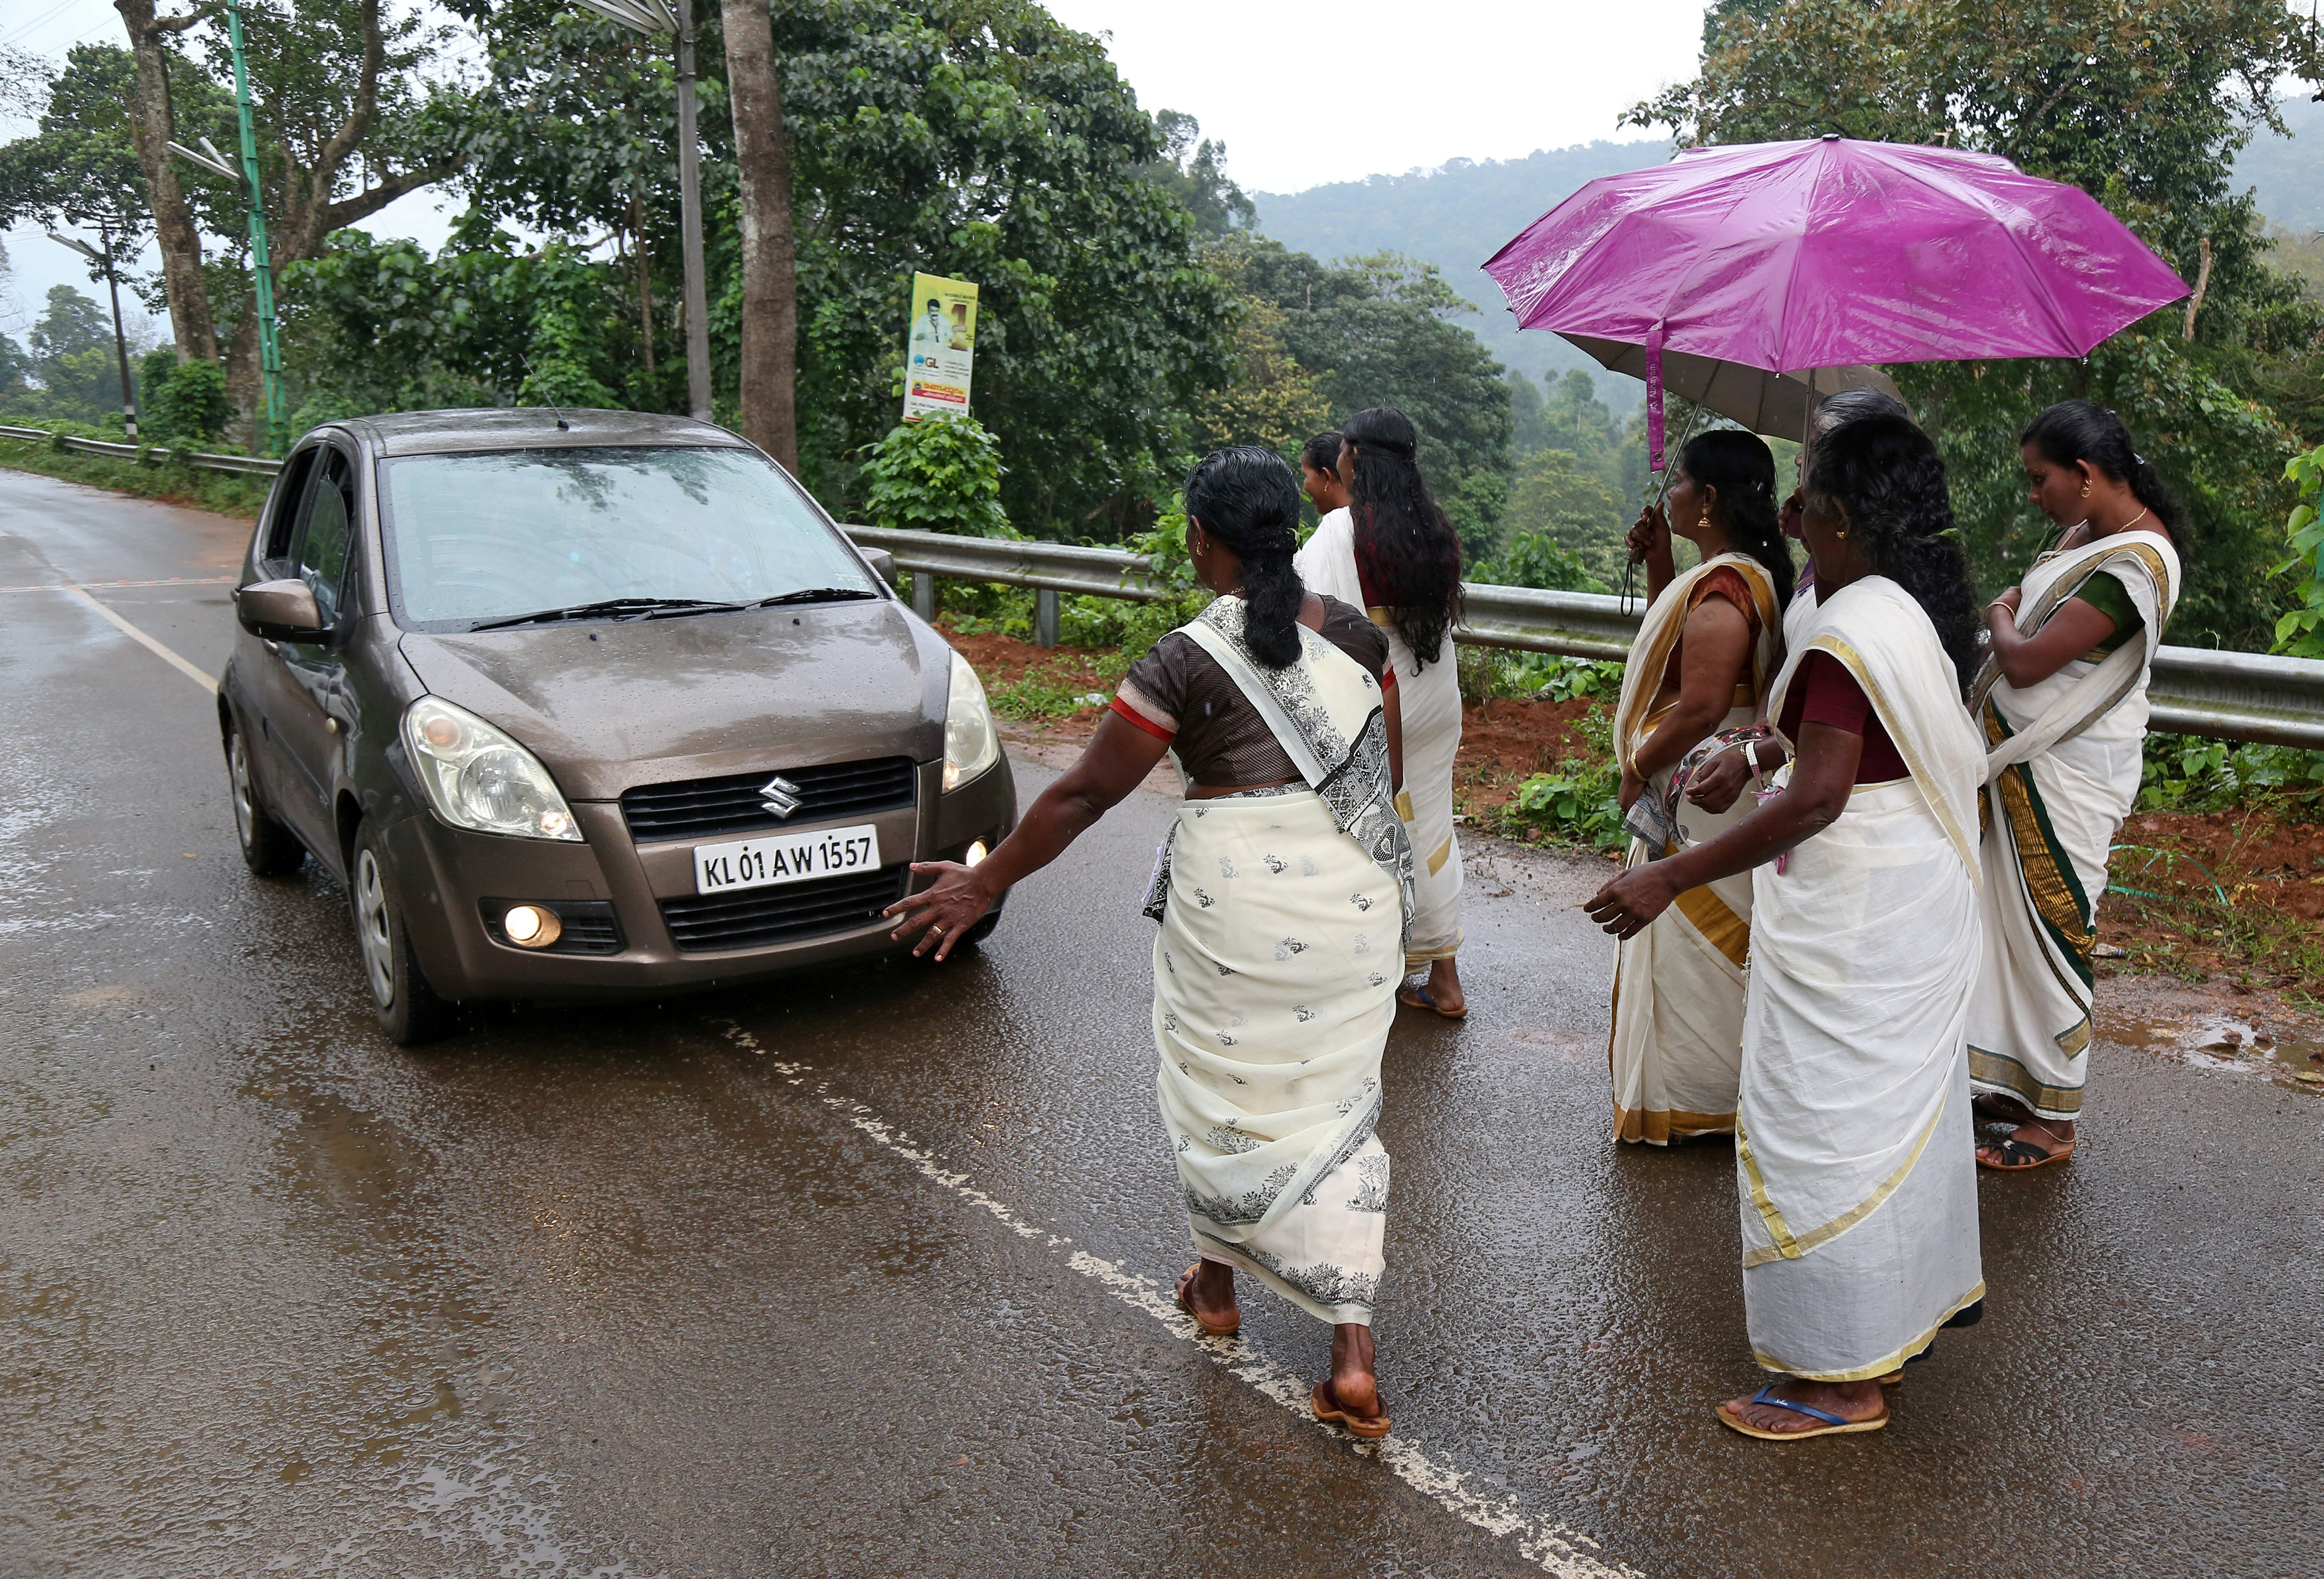 سيدات يفتشن السيارات لمنع النساء من دخول المعبد